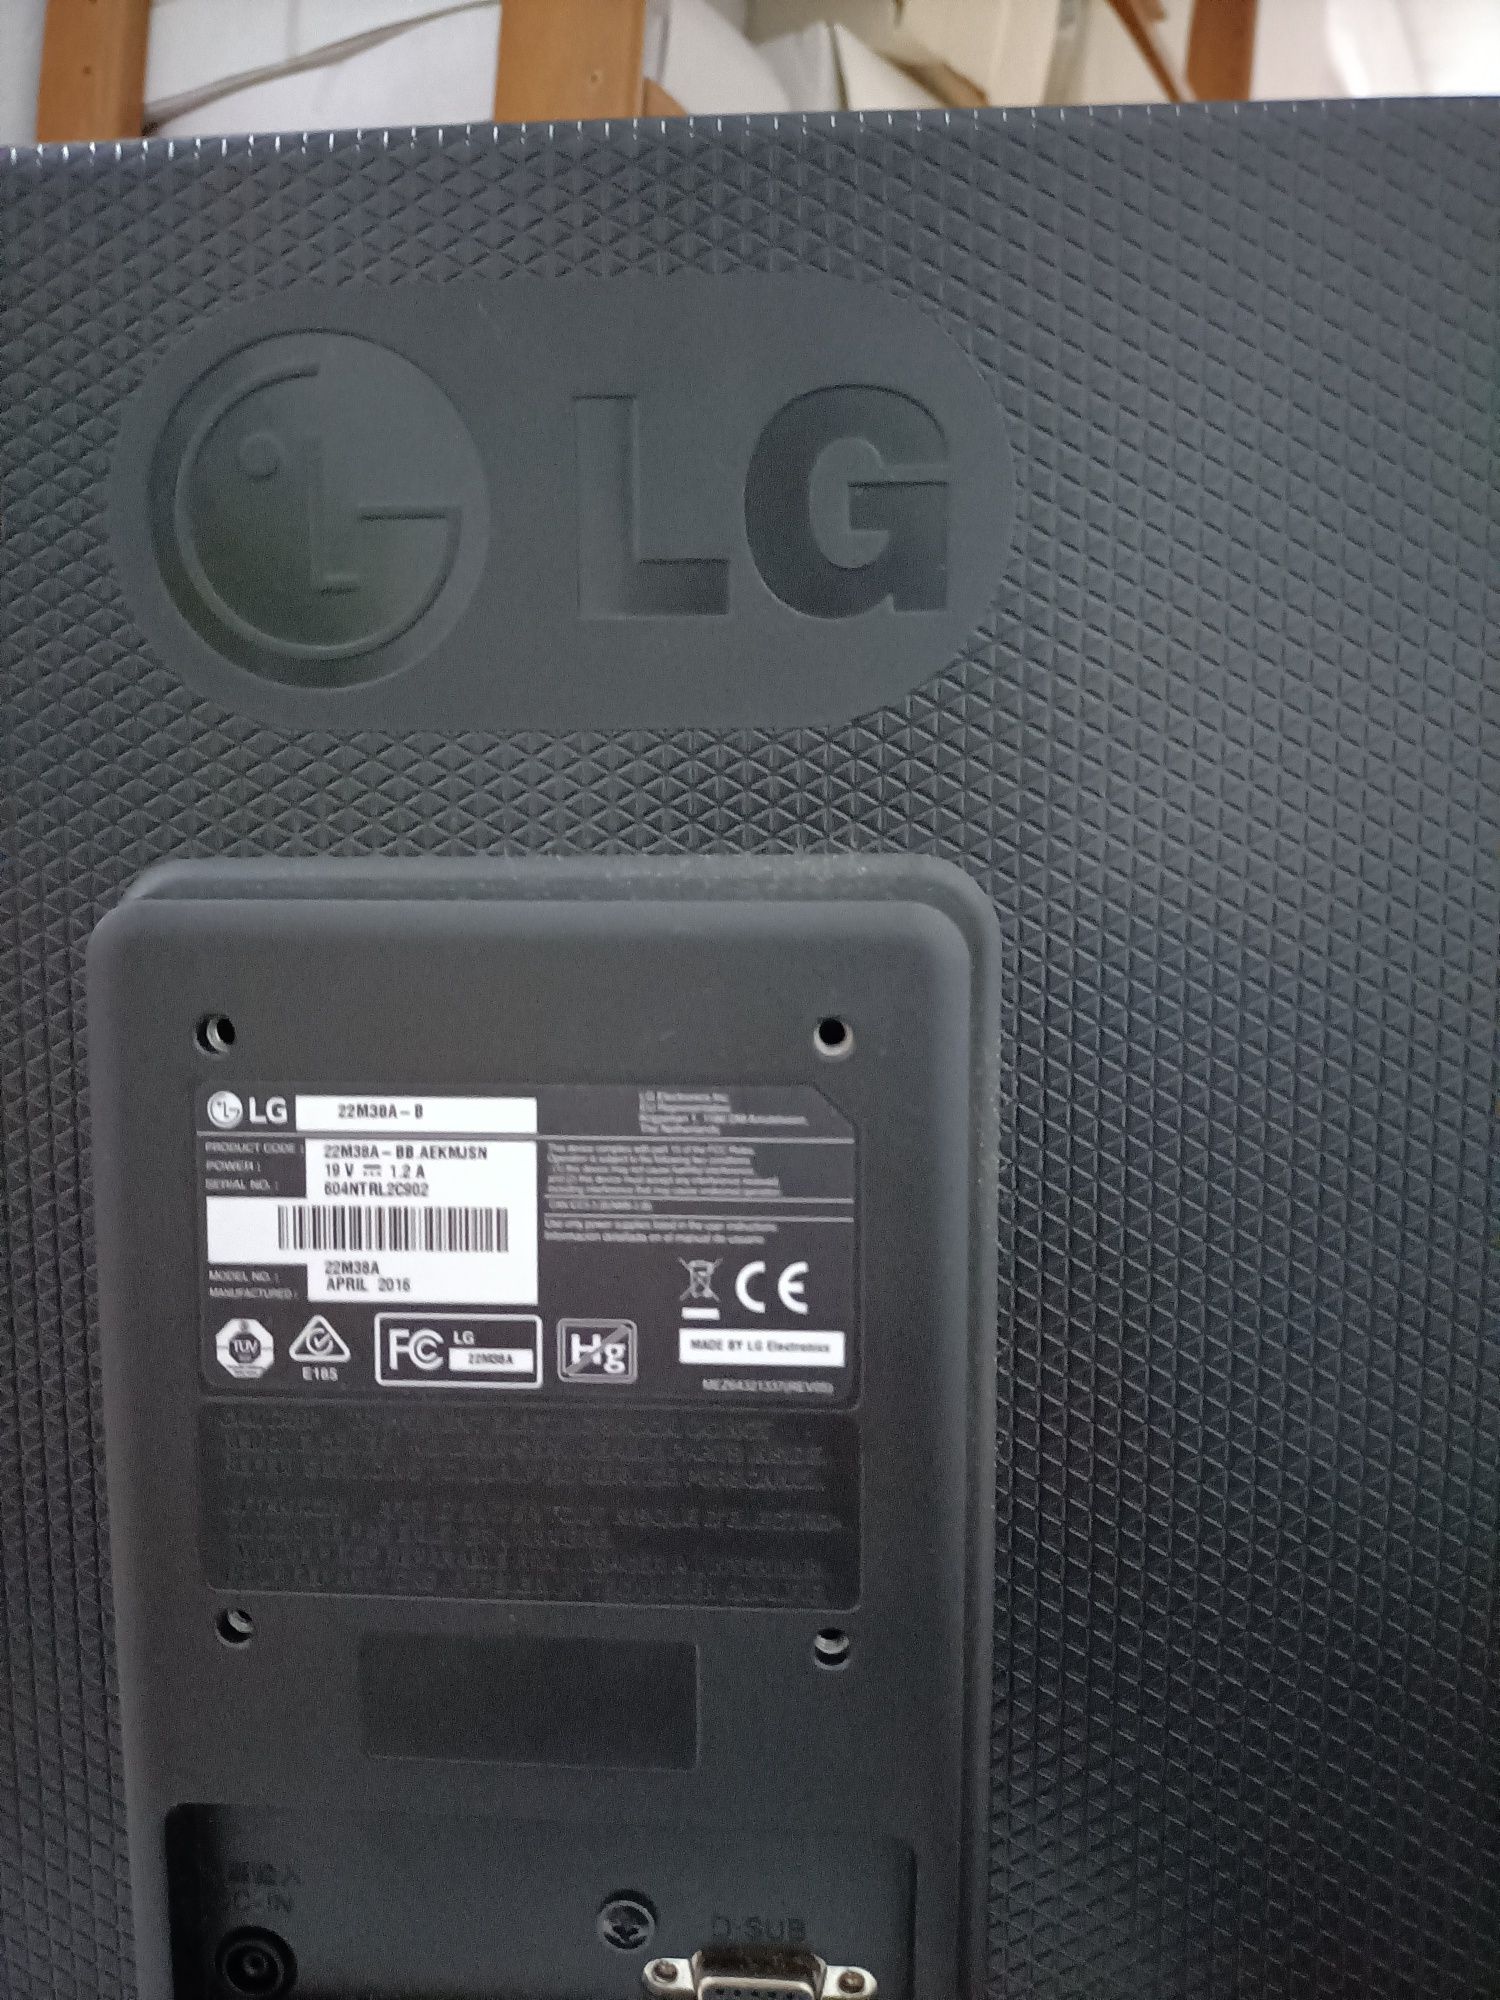 Monitor LG 22M38A - LED 21.5 FULL